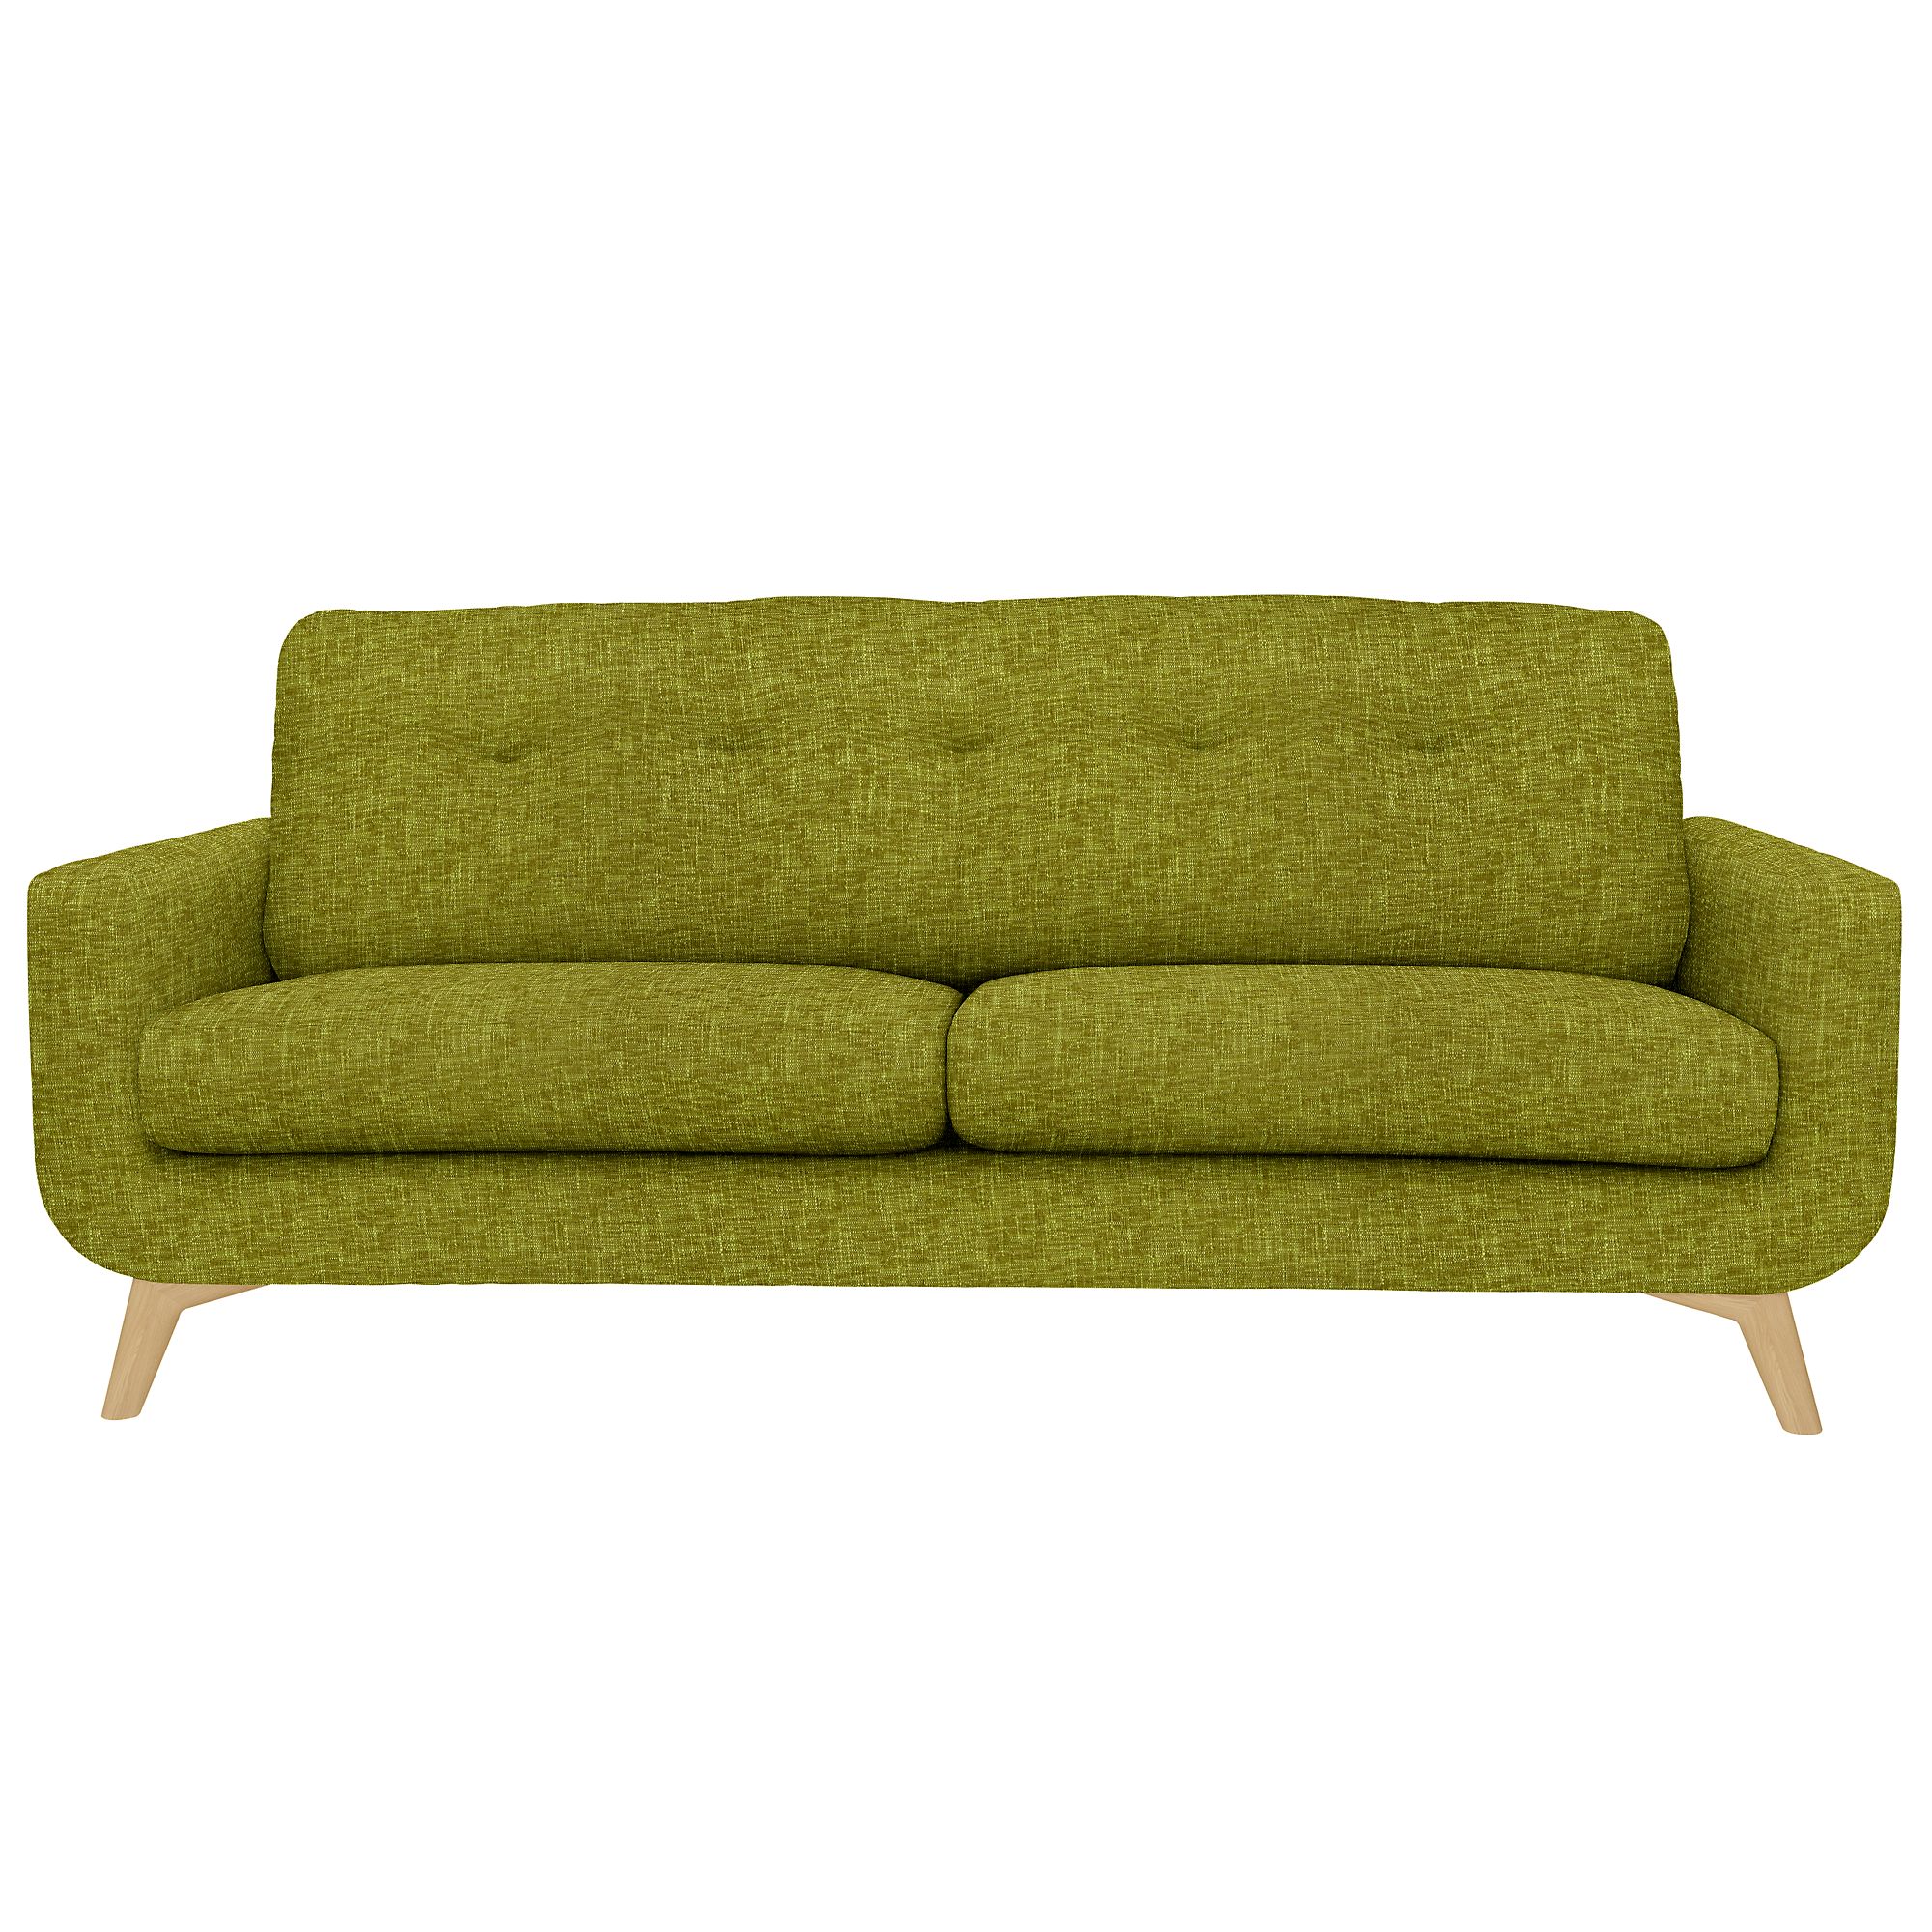 John Lewis Large Sofa, Cossette Green at John Lewis